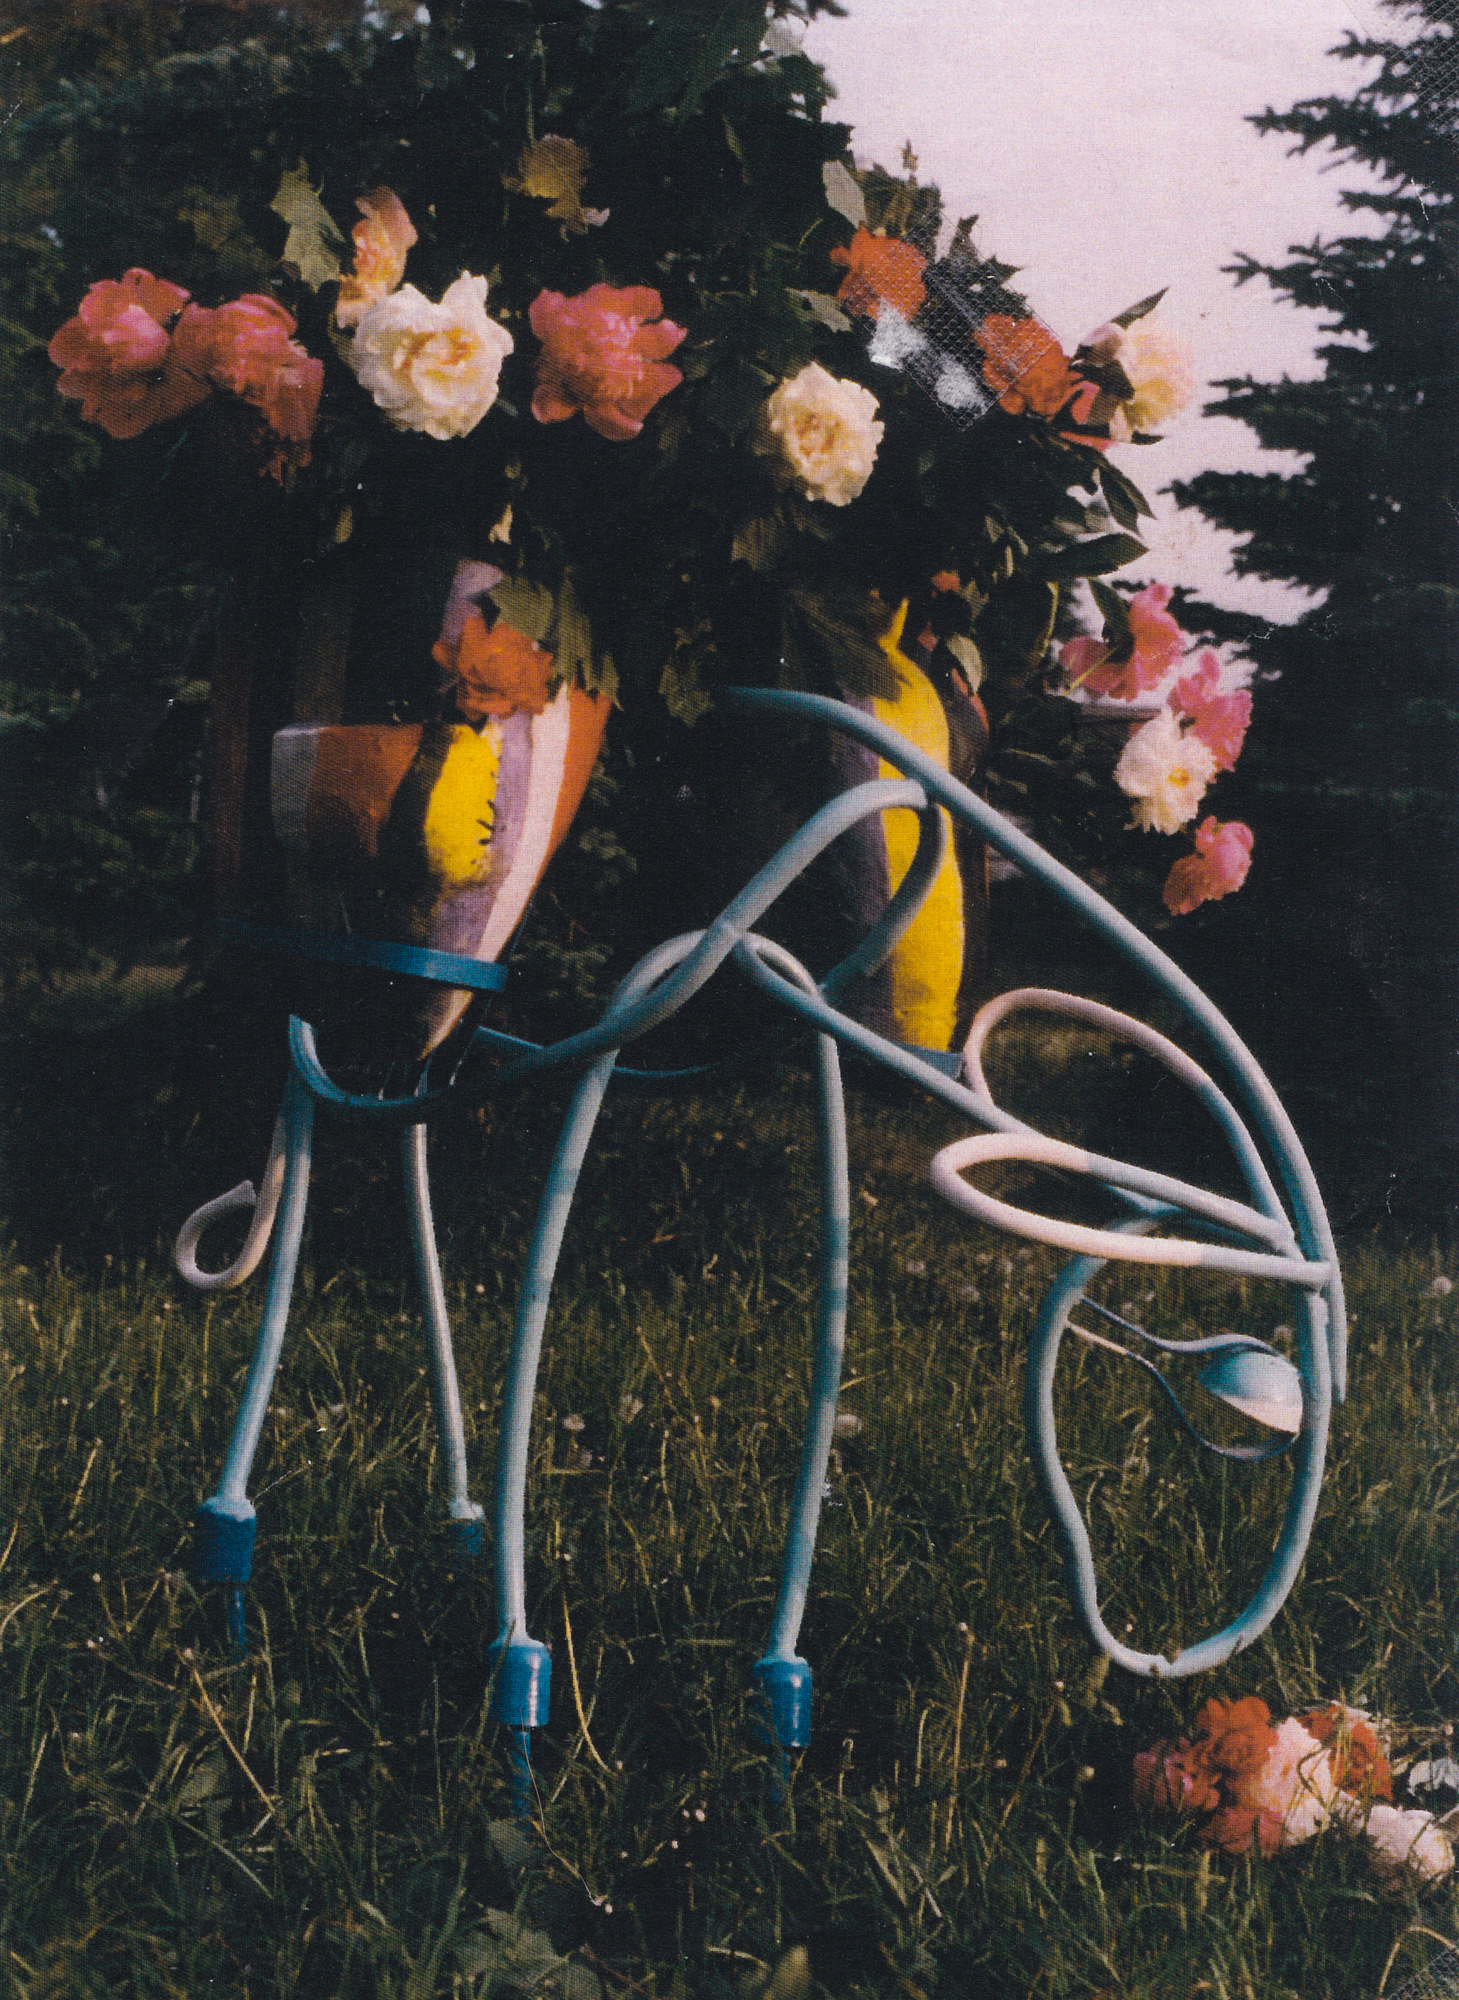 Валерия Доброхотова. "Ослик", 1996. Металл, краска. Детская площадка, Москва. Фото из архива Валерии Доброхотовой